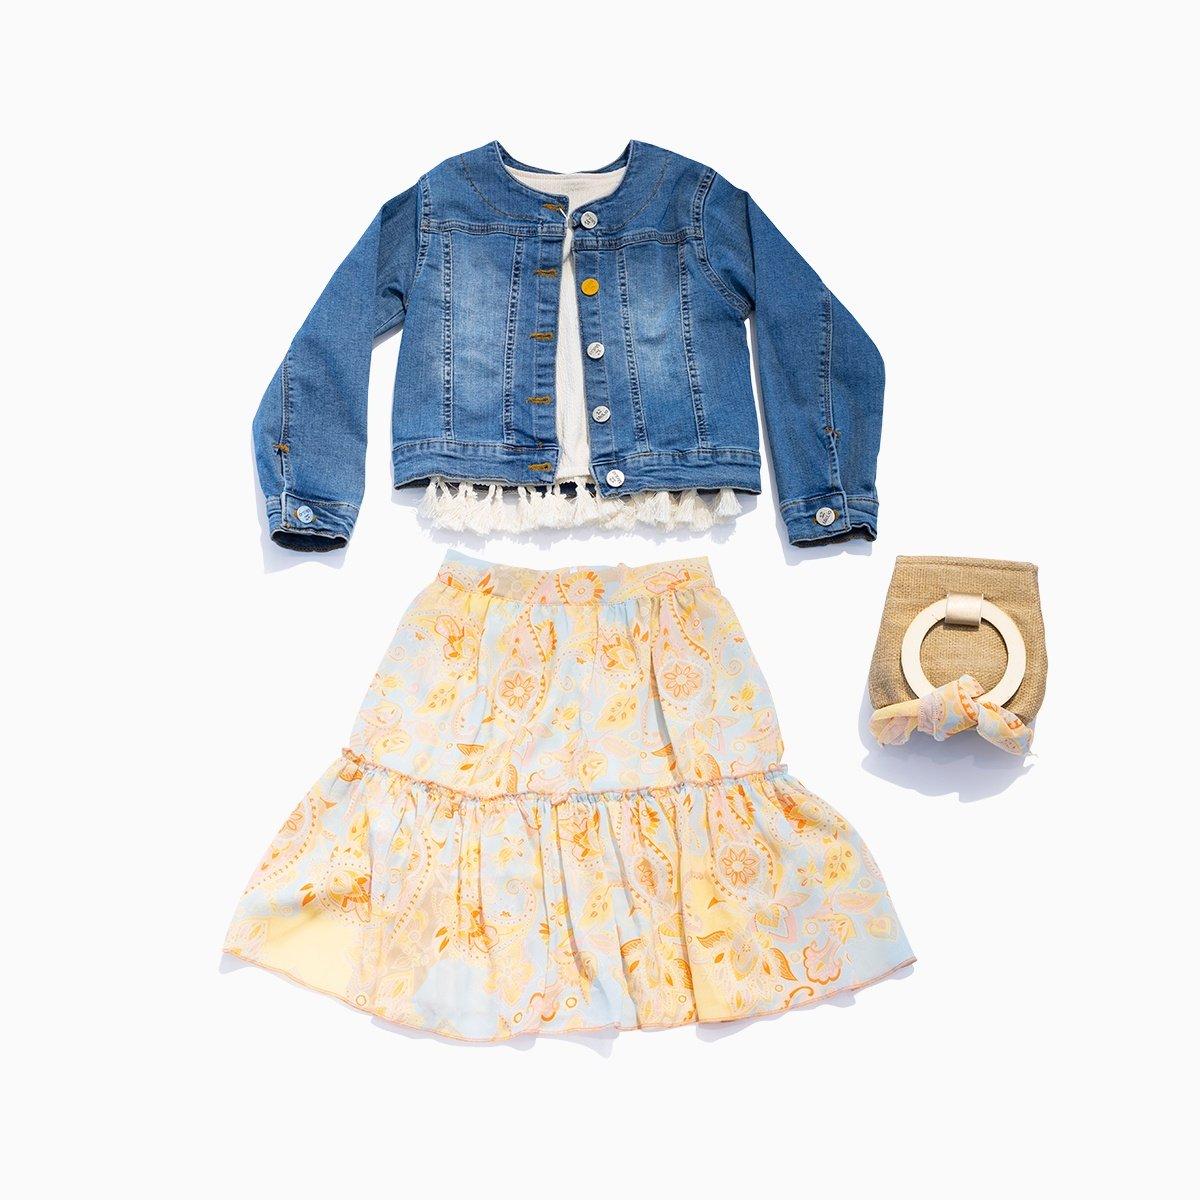 Jeans Jacket Top & Colorful Skirt 4 Piece Girls Set - Beige & Orange KIDS WEAR Mialia 